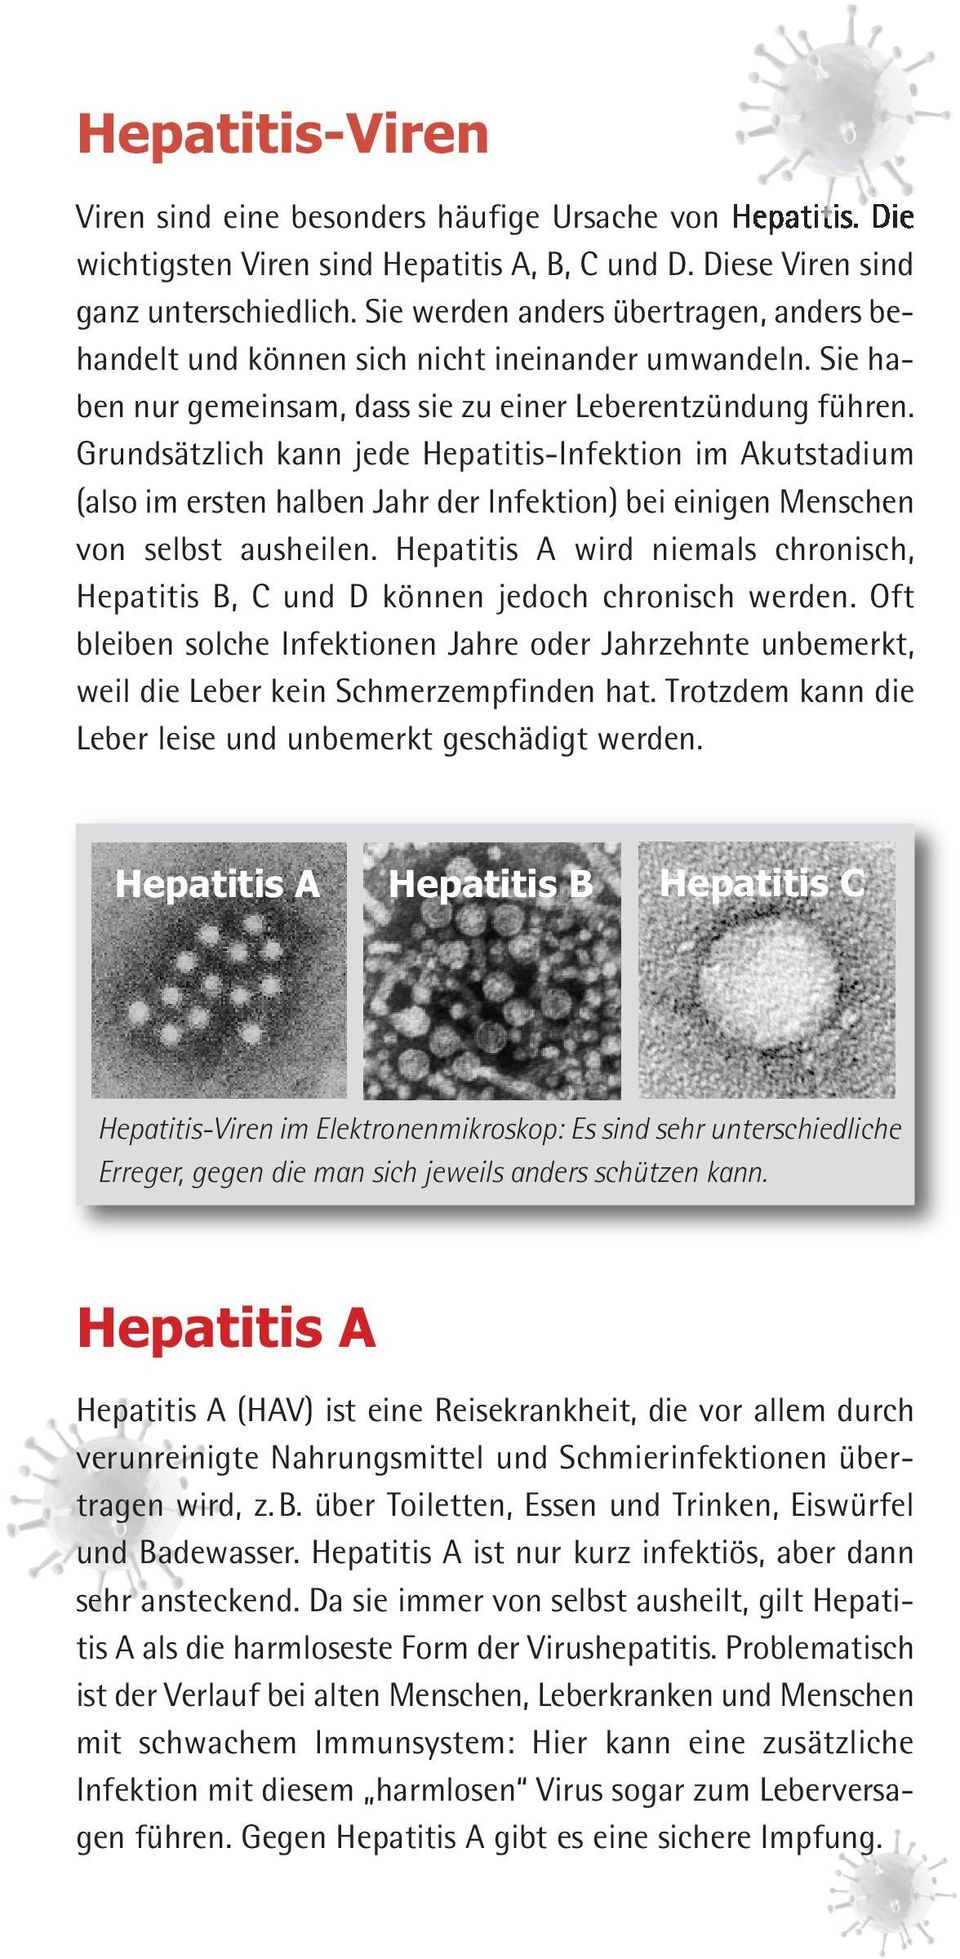 Grundsätzlich kann jede Hepatitis-Infektion im Akutstadium (also im ersten halben Jahr der Infektion) bei einigen Menschen von selbst ausheilen.